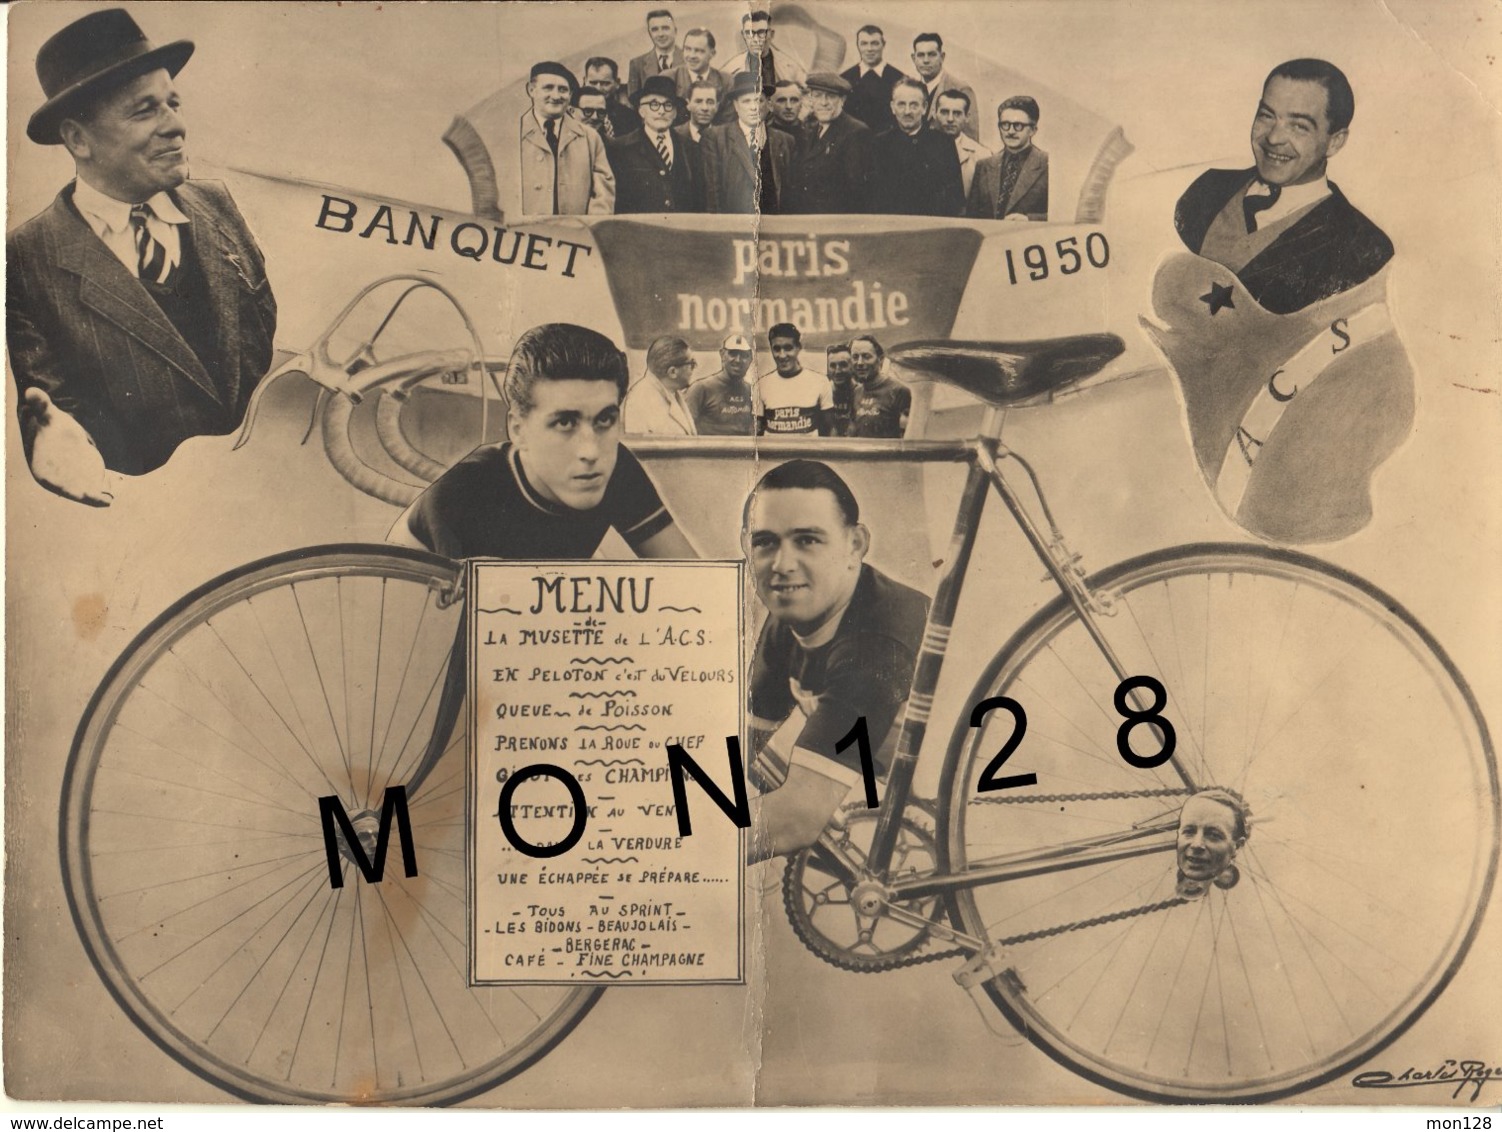 CYCLISME -MENU DU BANQUET 1950 DE L'A.C.S -AUTO CYCLE SOTTEVILLAIS- CHARLES ROGER-MENU ORIGINAL PLIé EN DEUX - Cyclisme